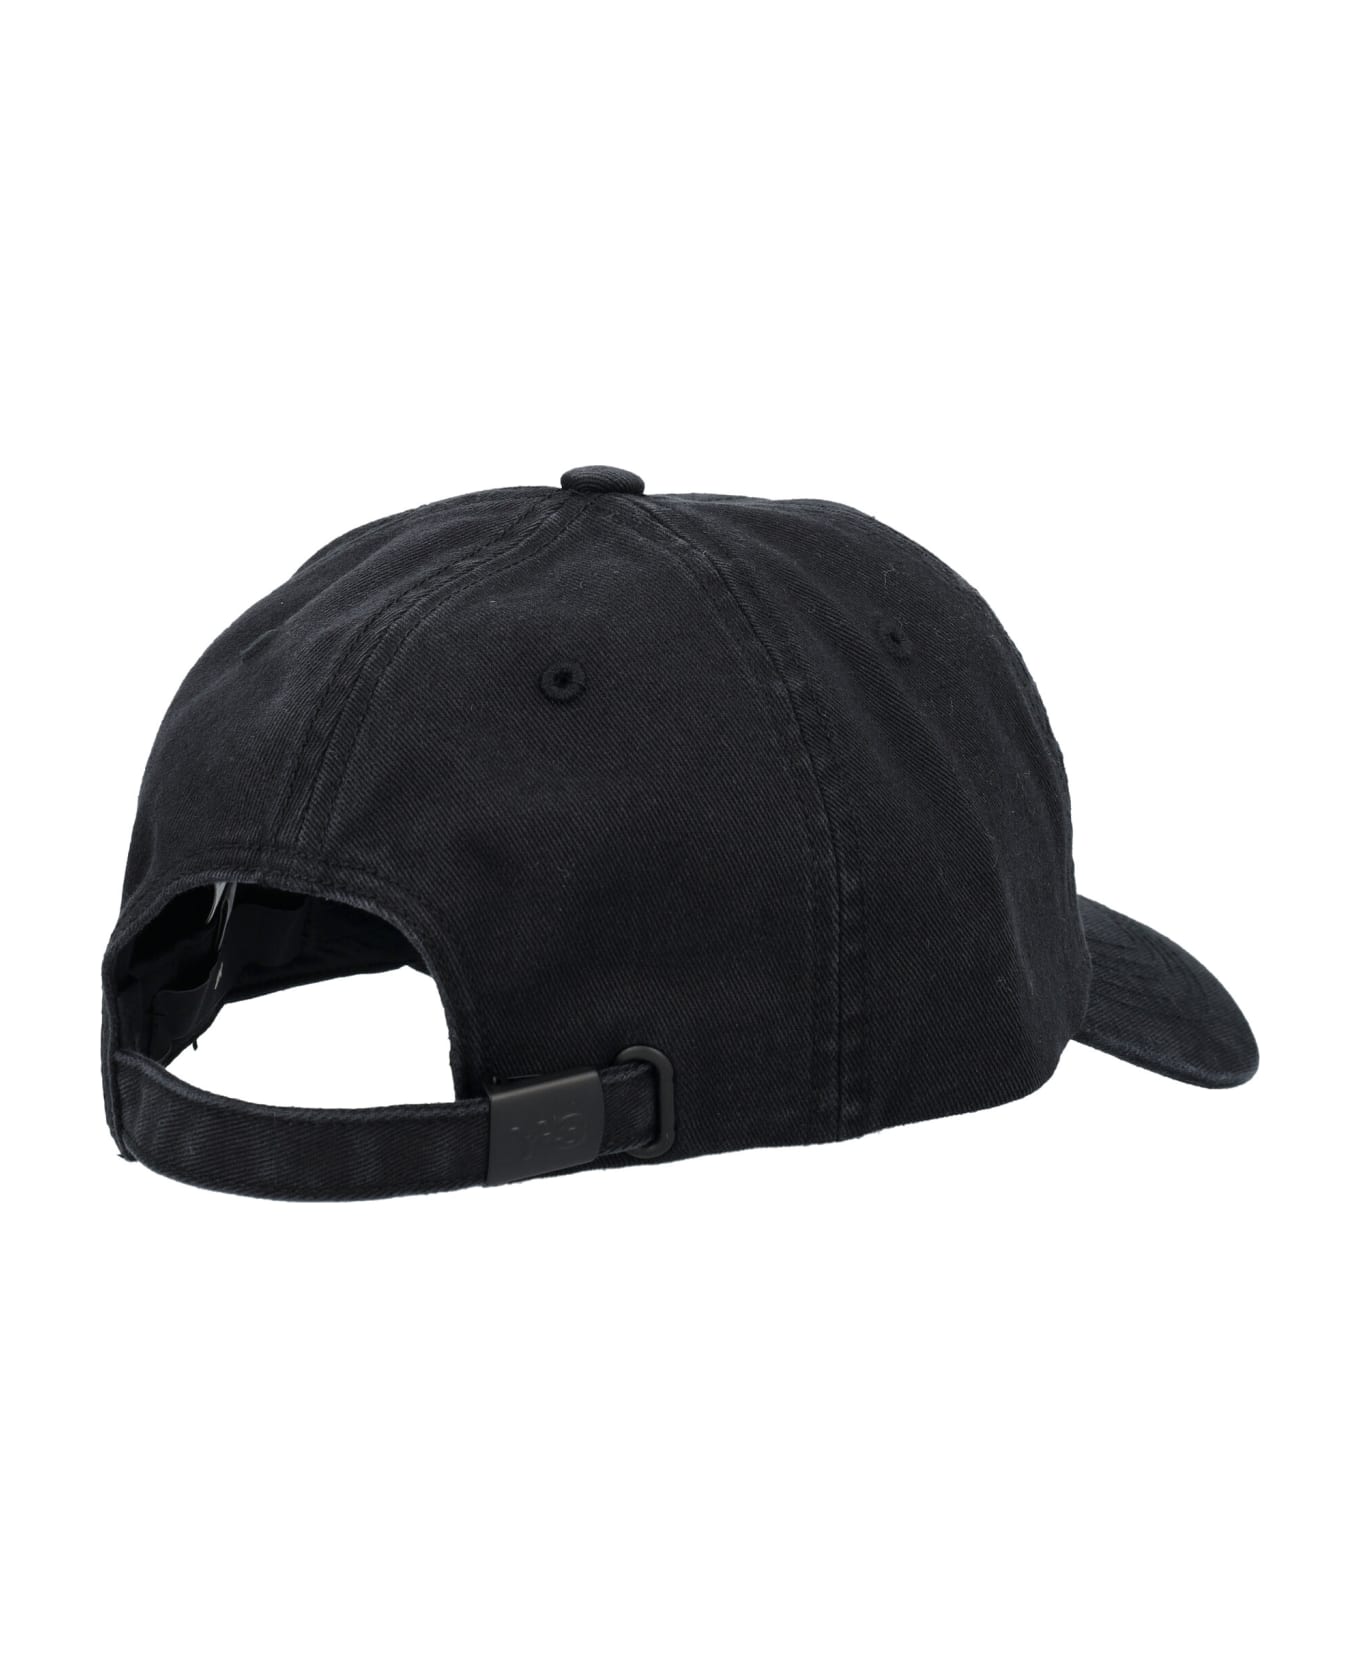 Y-3 Cap - BLACK 帽子